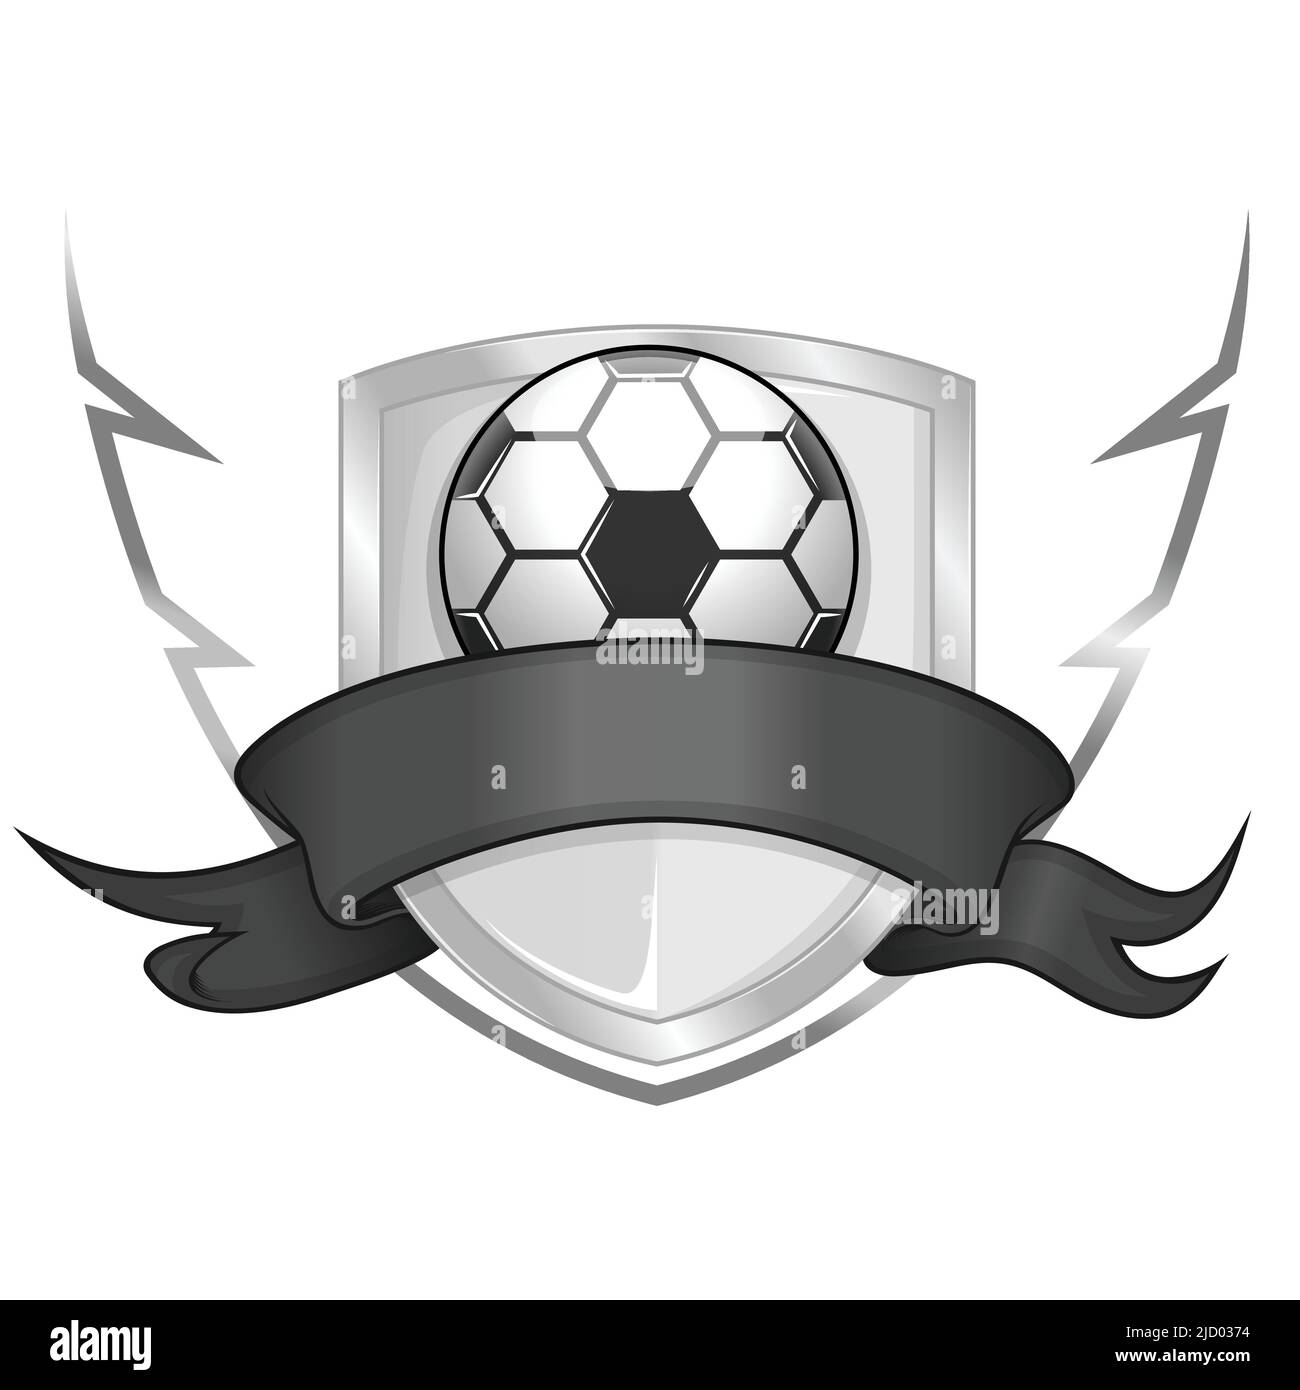 Schild-Design mit Band und Fußball, Logo eines Fußballvereins Stock Vektor